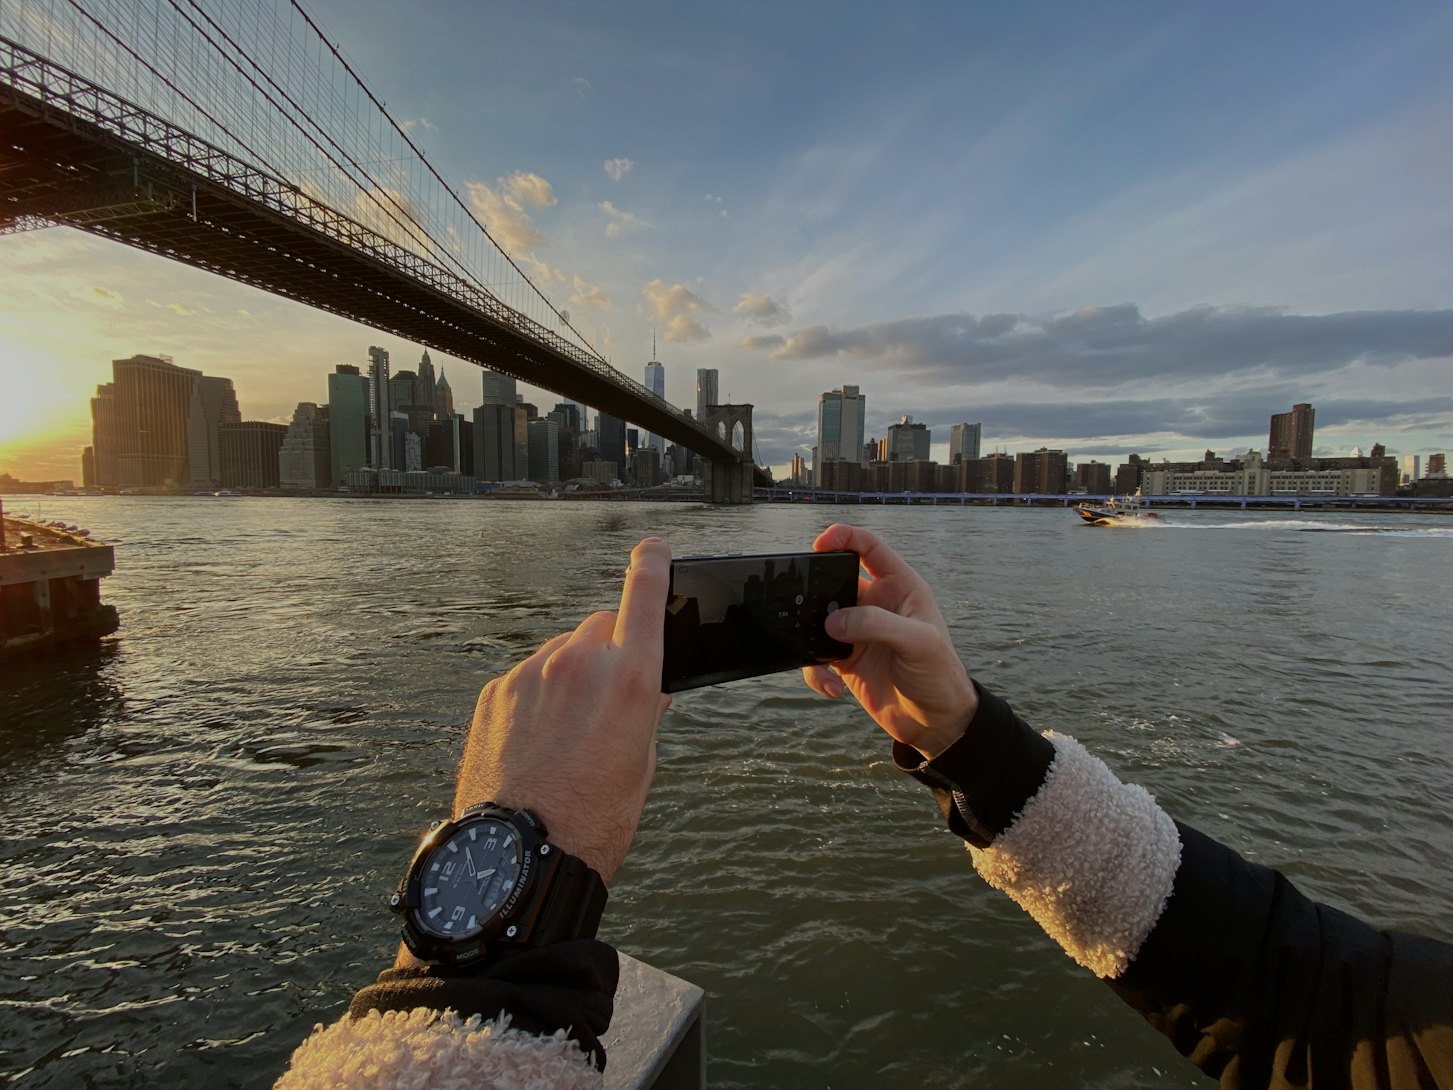 Bạn đang tìm kiếm một chiếc điện thoại với camera chụp ảnh vượt trội? Samsung Galaxy S20 Ultra chính là sự lựa chọn tuyệt vời cho bạn. Với độ phân giải cao, zoom quang học 100x và khả năng chụp ảnh trong mọi điều kiện ánh sáng, S20 Ultra sẽ mang tới cho bạn những bức ảnh tuyệt đẹp và sống động.